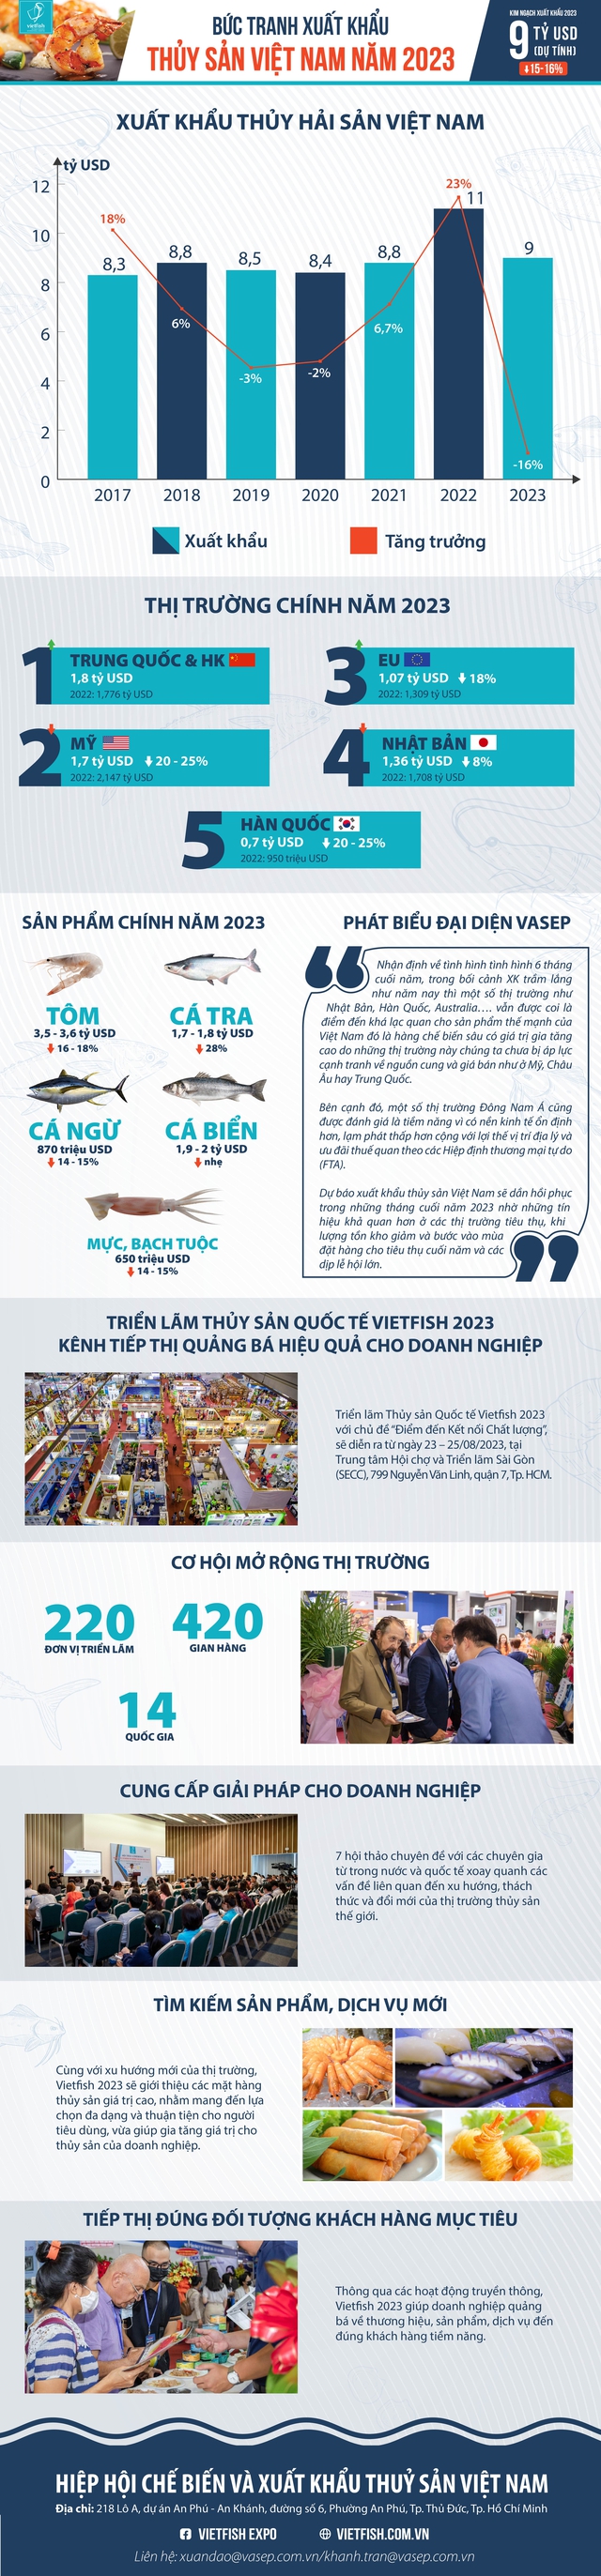 Bức tranh xuất khẩu thủy sản Việt Nam năm 2023 - Ảnh 1.